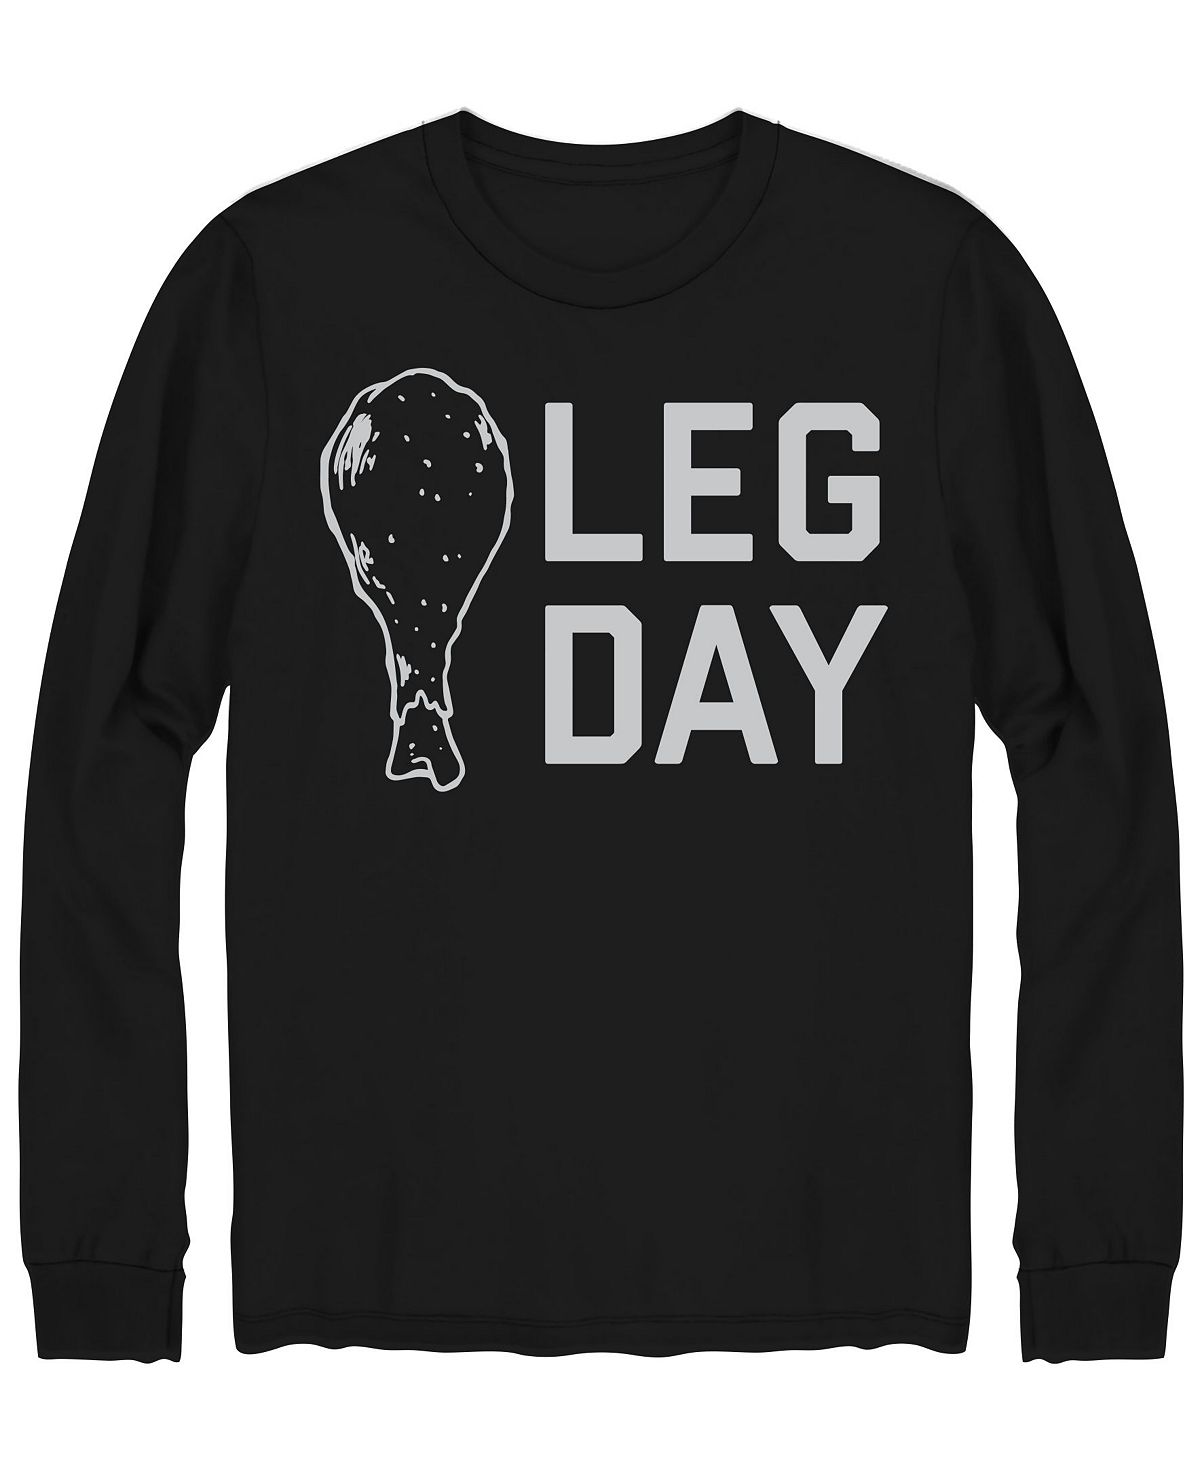 Мужская футболка с длинным рукавом hybrid leg day AIRWAVES, черный